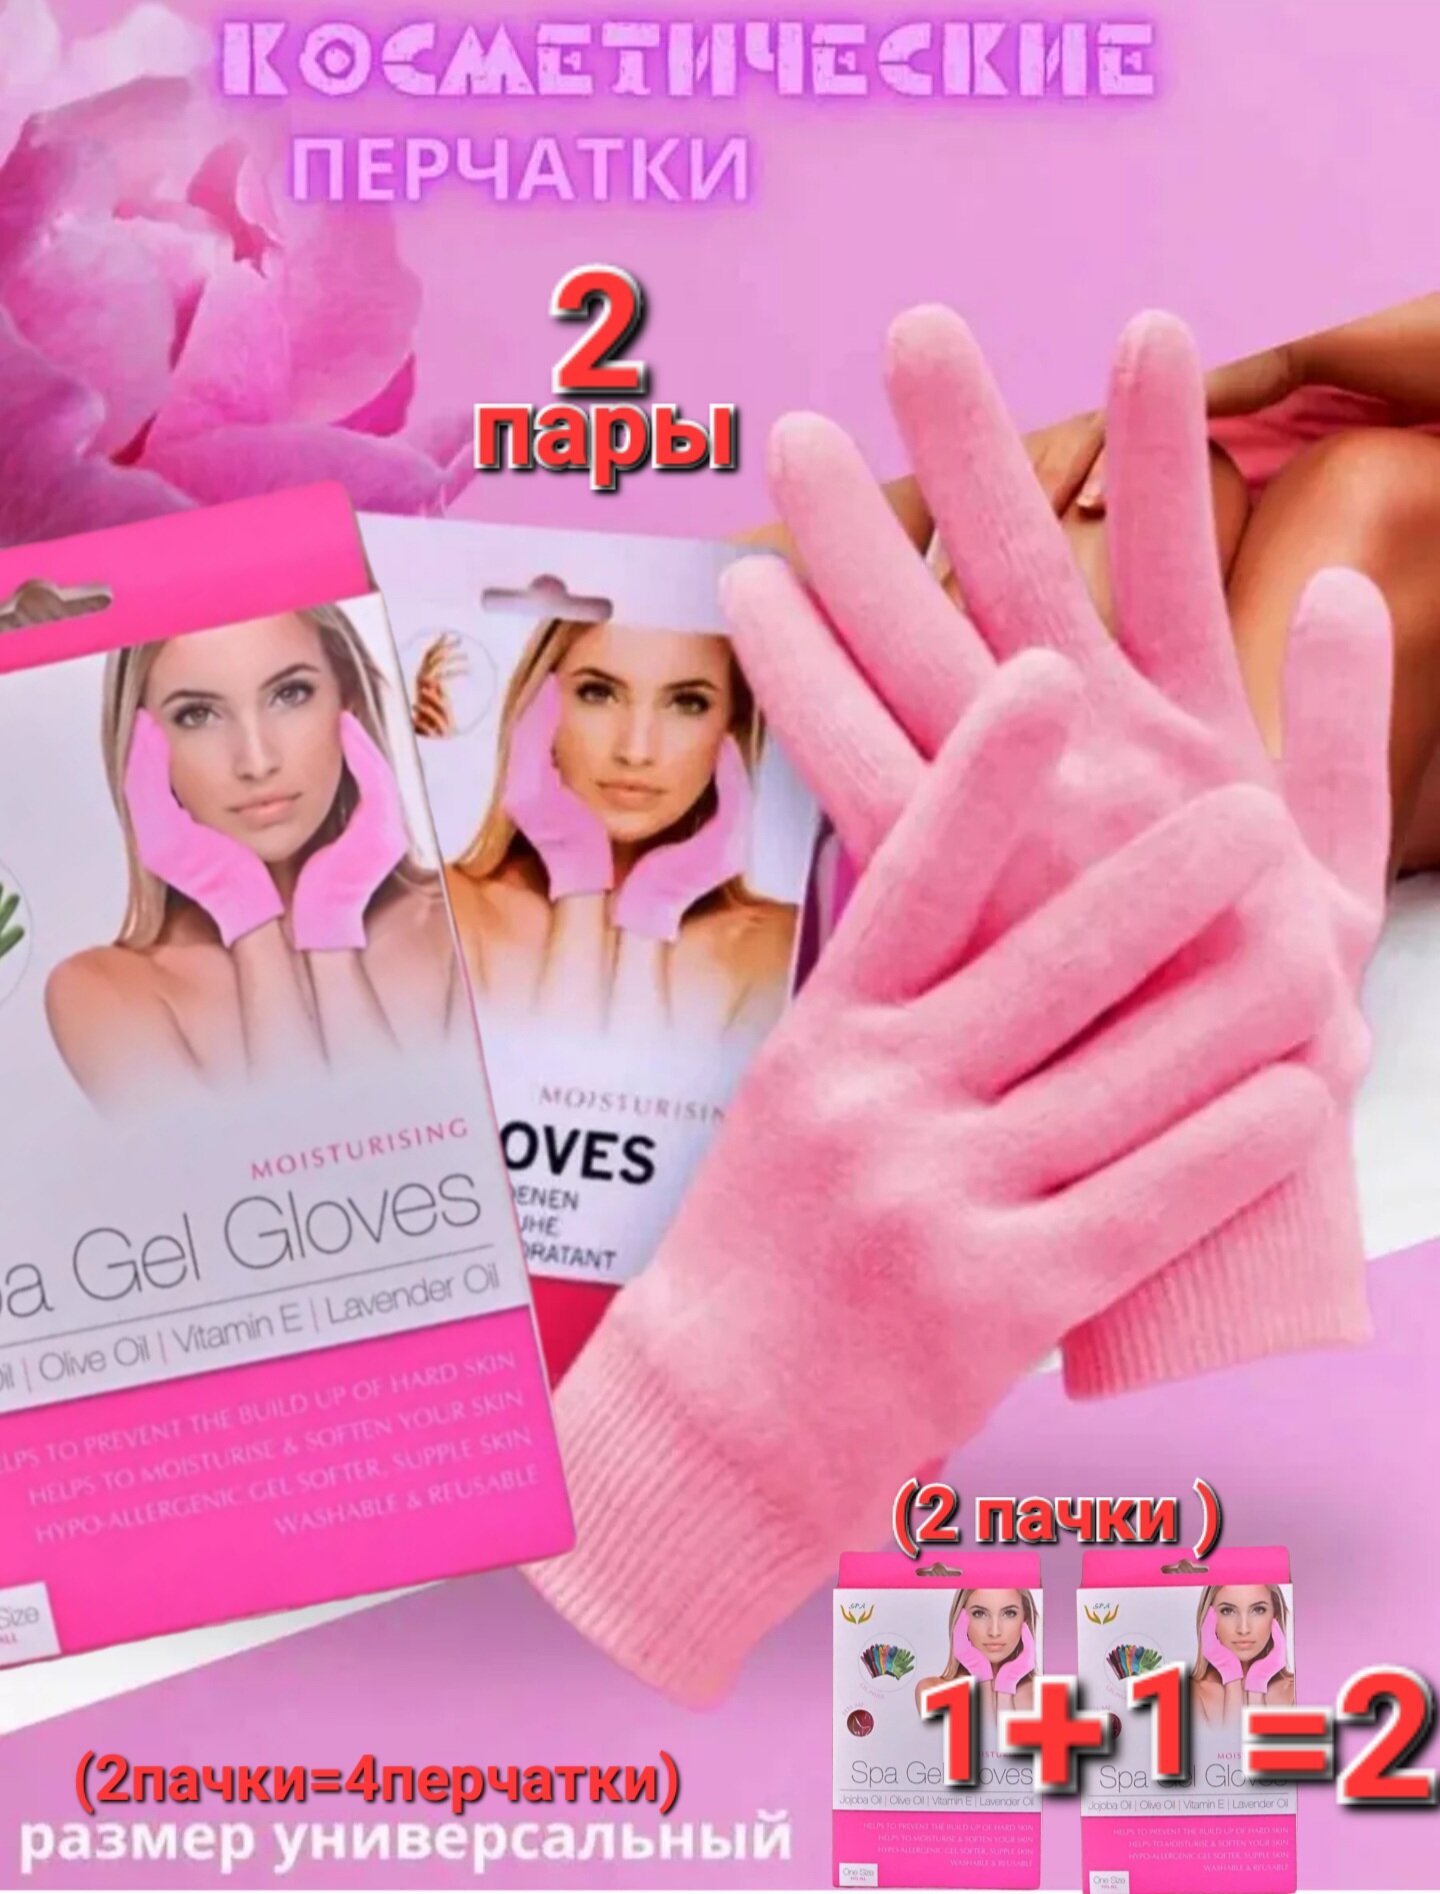 Spa многоразовые гелевые , силиконовые Спа перчатки косметические ( в наборе 2 пары )